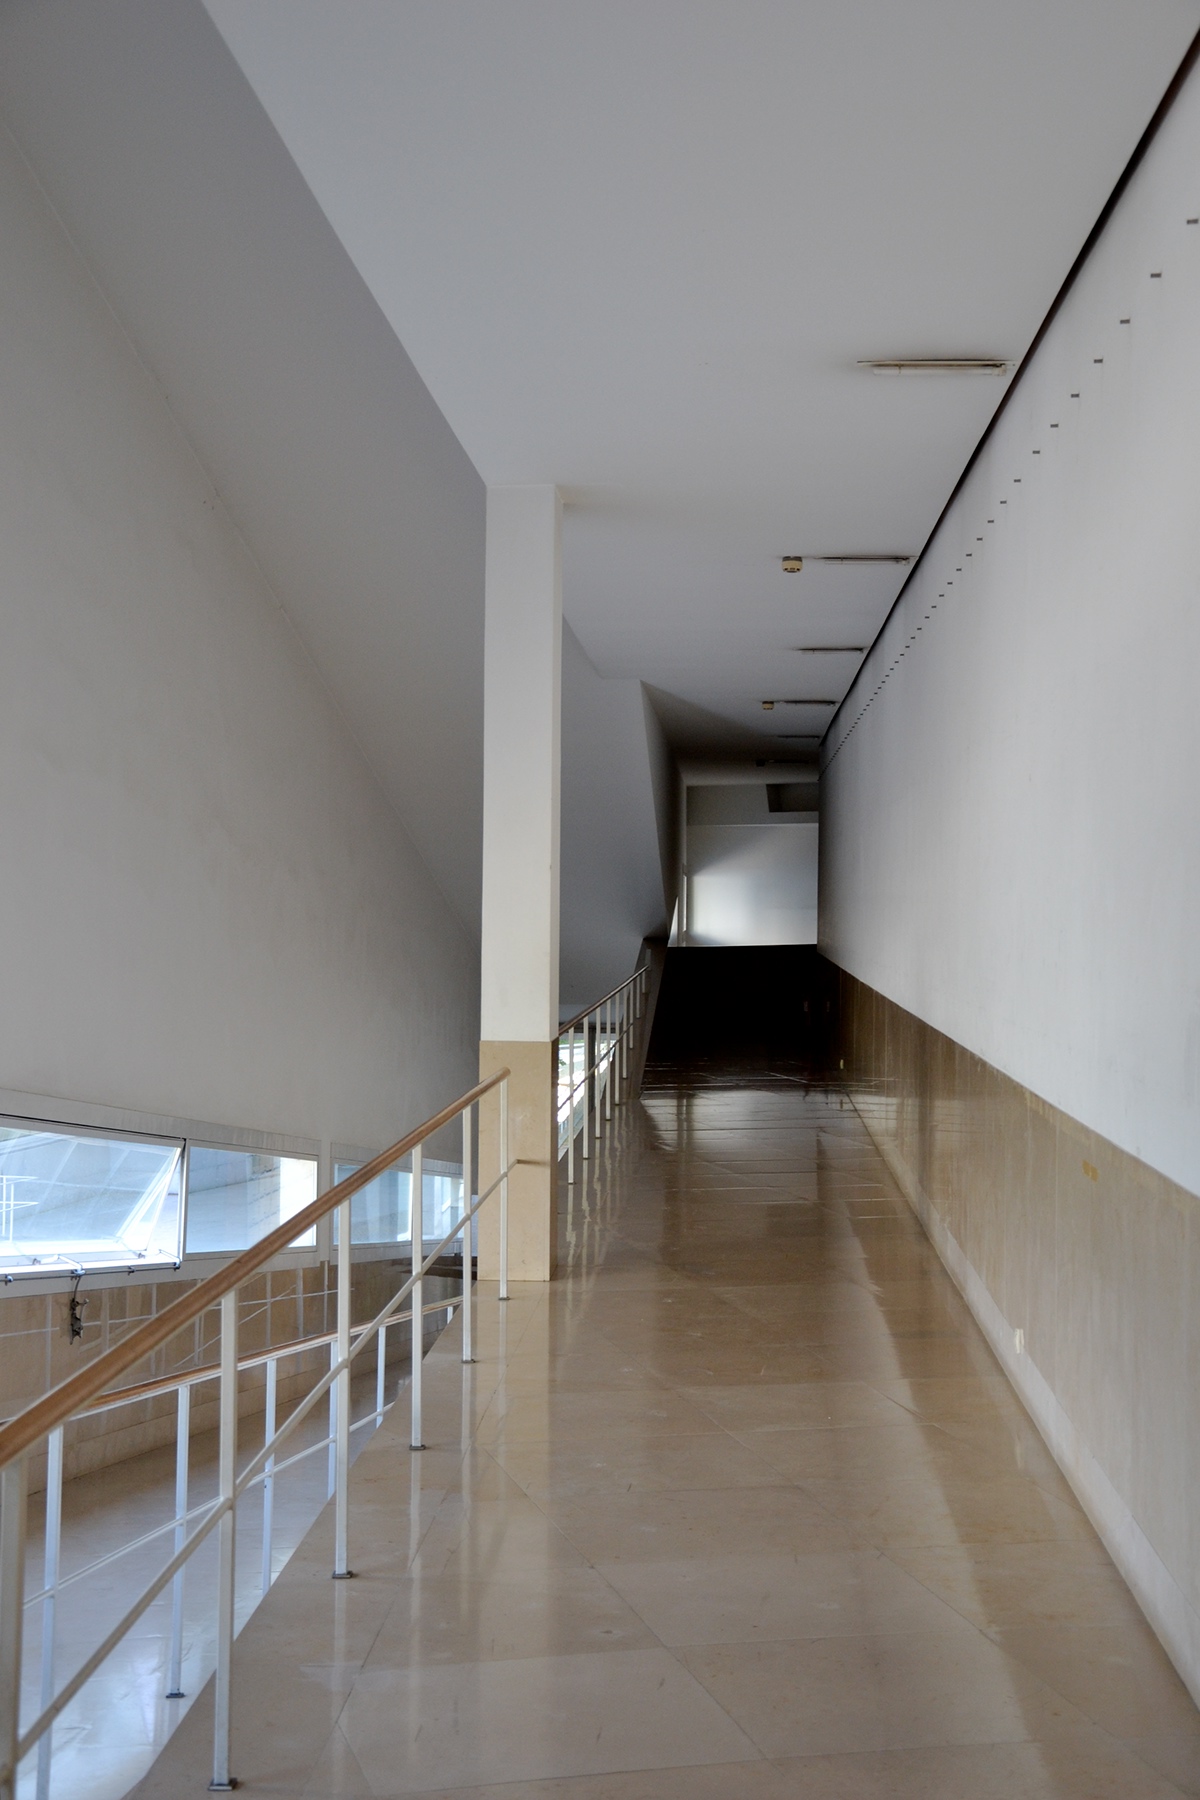 FAUP Faculdade de Arquitectura universidade do porto Oporto Portugal siza vieira siza Architecture Photography Renata Sousa